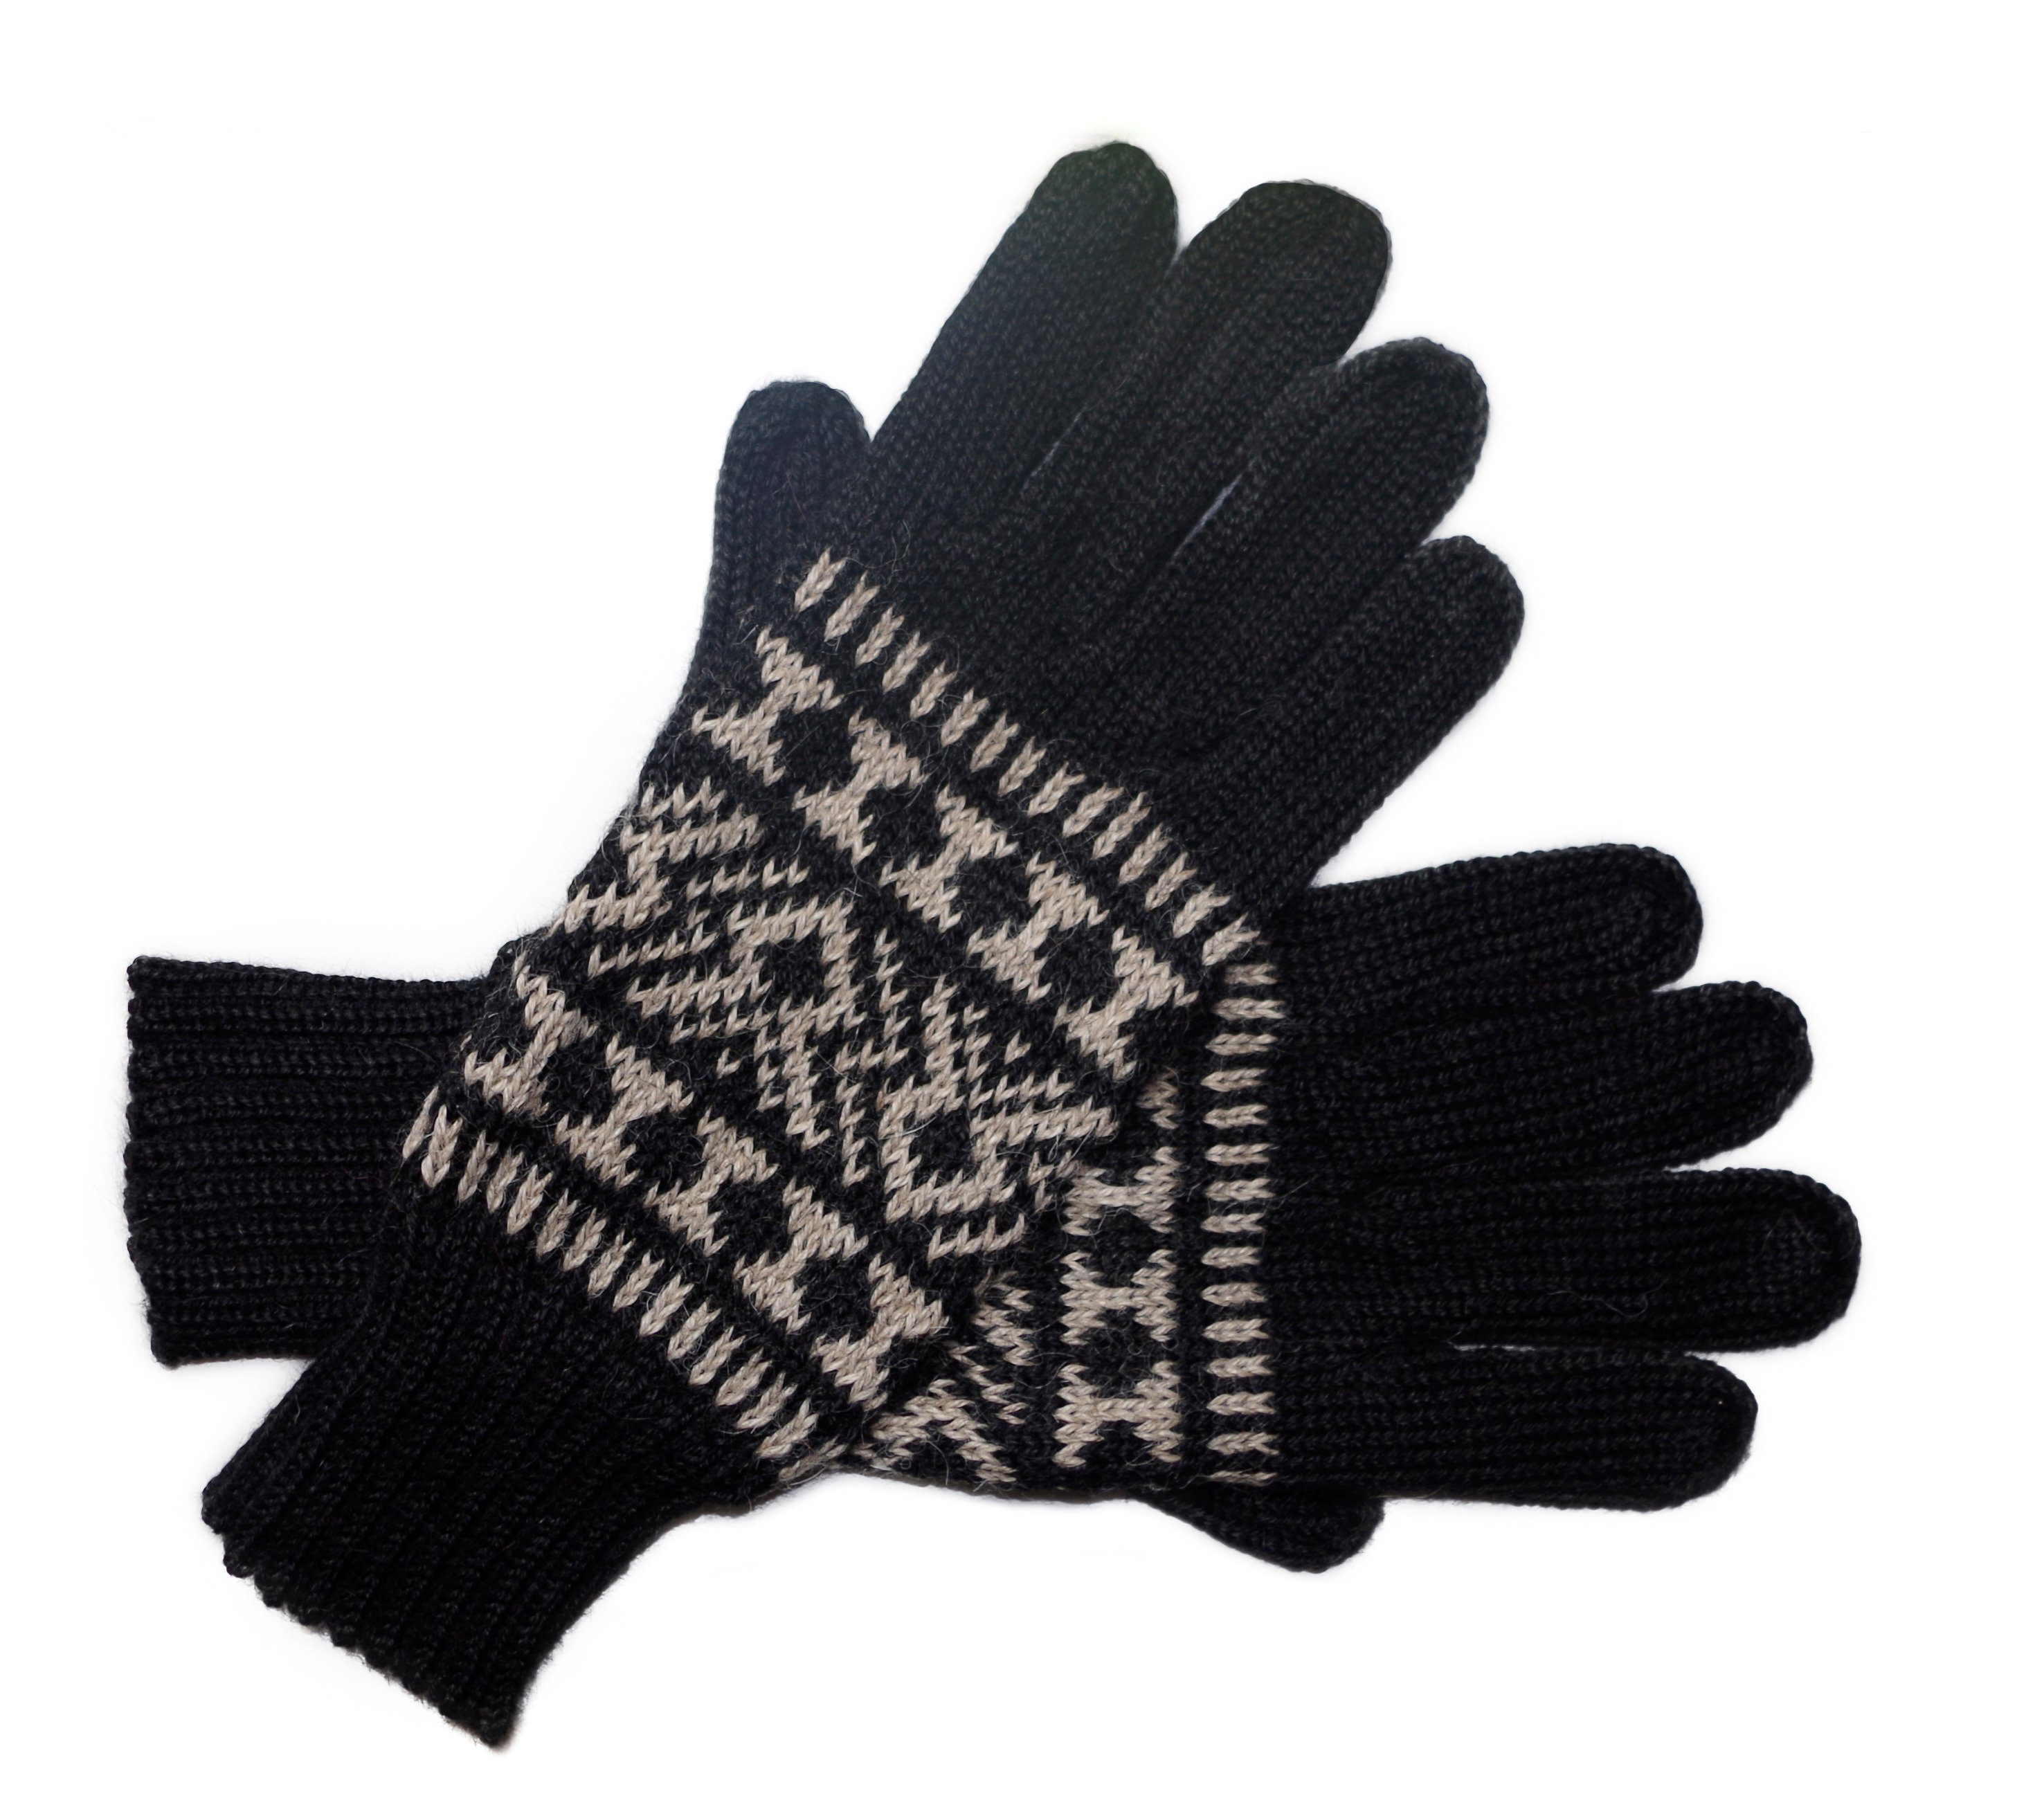 Posh Gear Strickhandschuhe Guantofigura Fingerhandschuhe aus 100% Alpakawolle schwarz